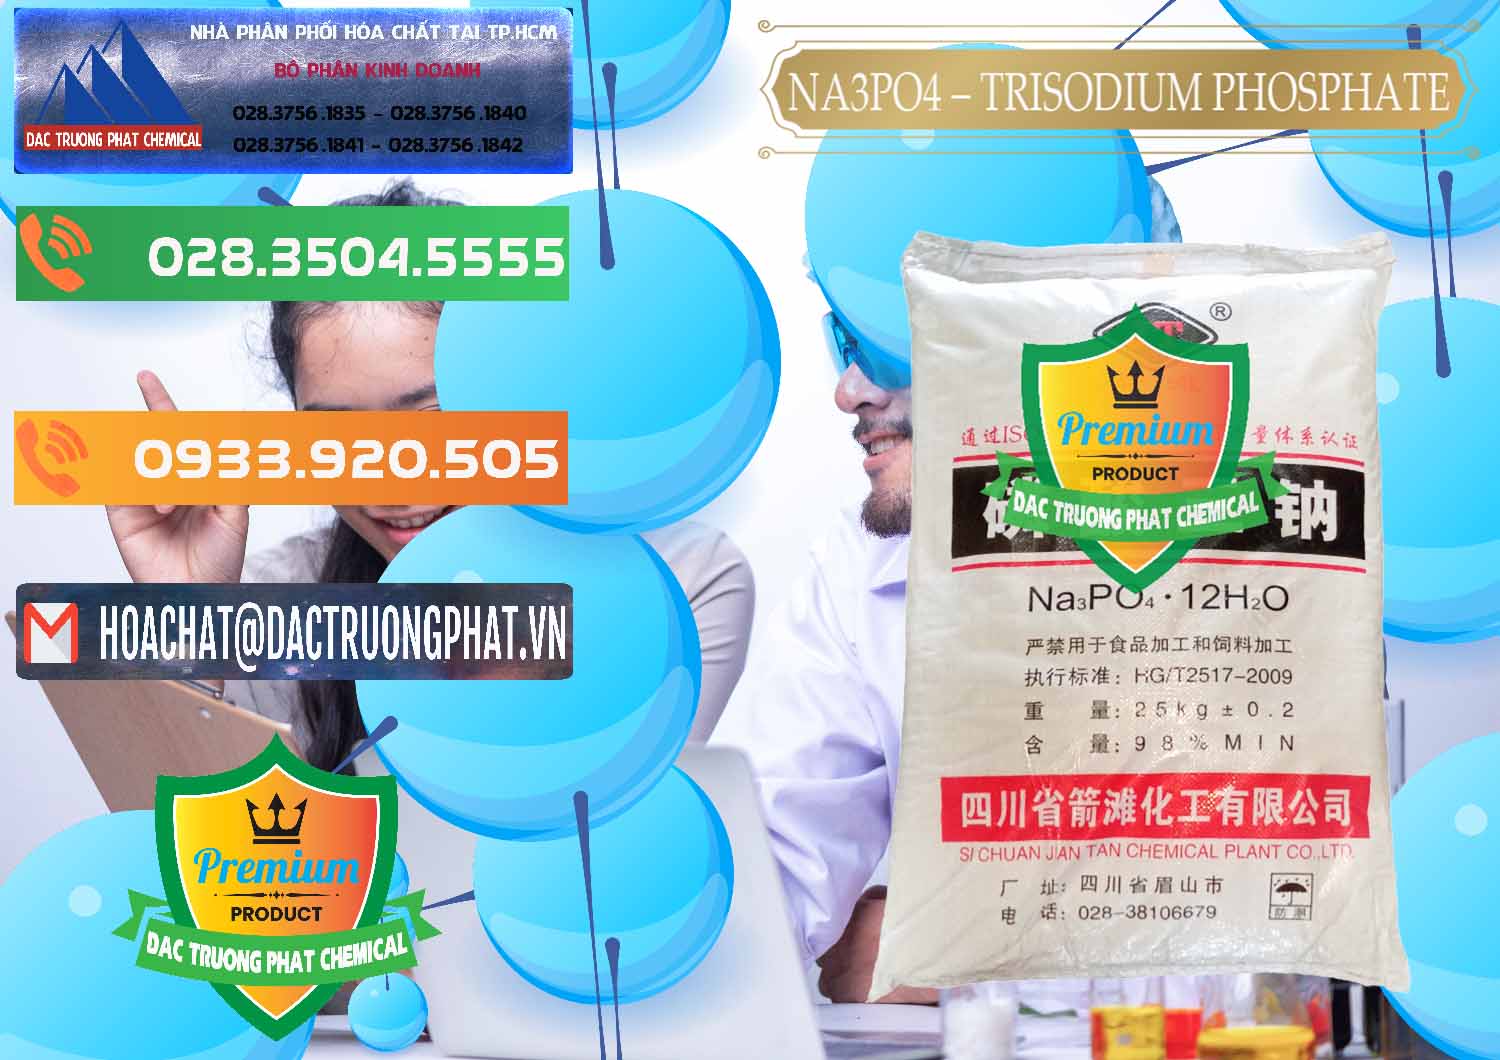 Nơi nhập khẩu - bán Na3PO4 – Trisodium Phosphate Trung Quốc China JT - 0102 - Nhà nhập khẩu & phân phối hóa chất tại TP.HCM - hoachatxulynuoc.com.vn